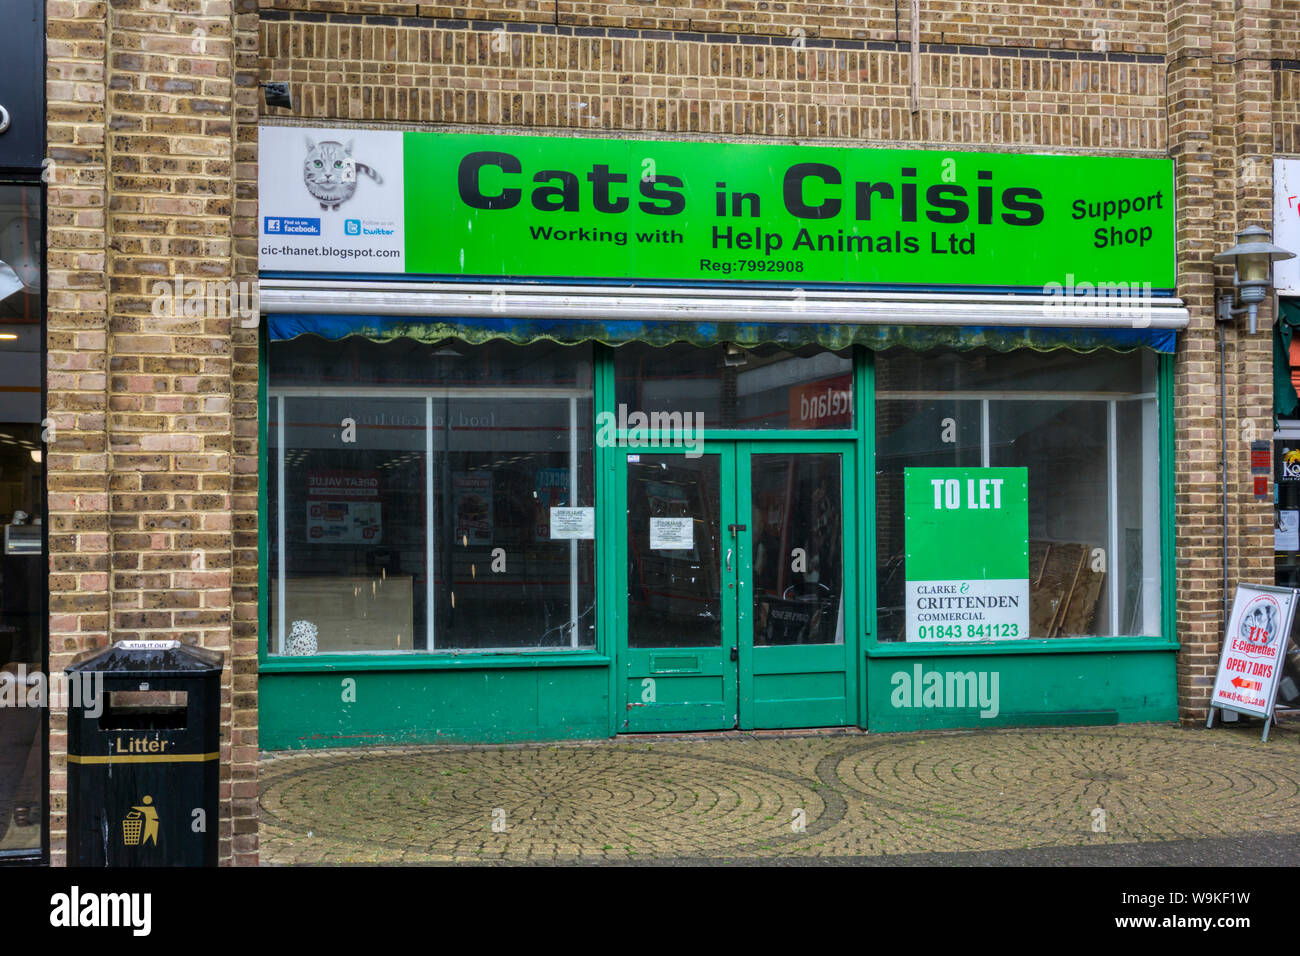 Les chats fermé en crise dans le magasin de charité College Square Shopping Center à Margate, Kent. À présent. Banque D'Images